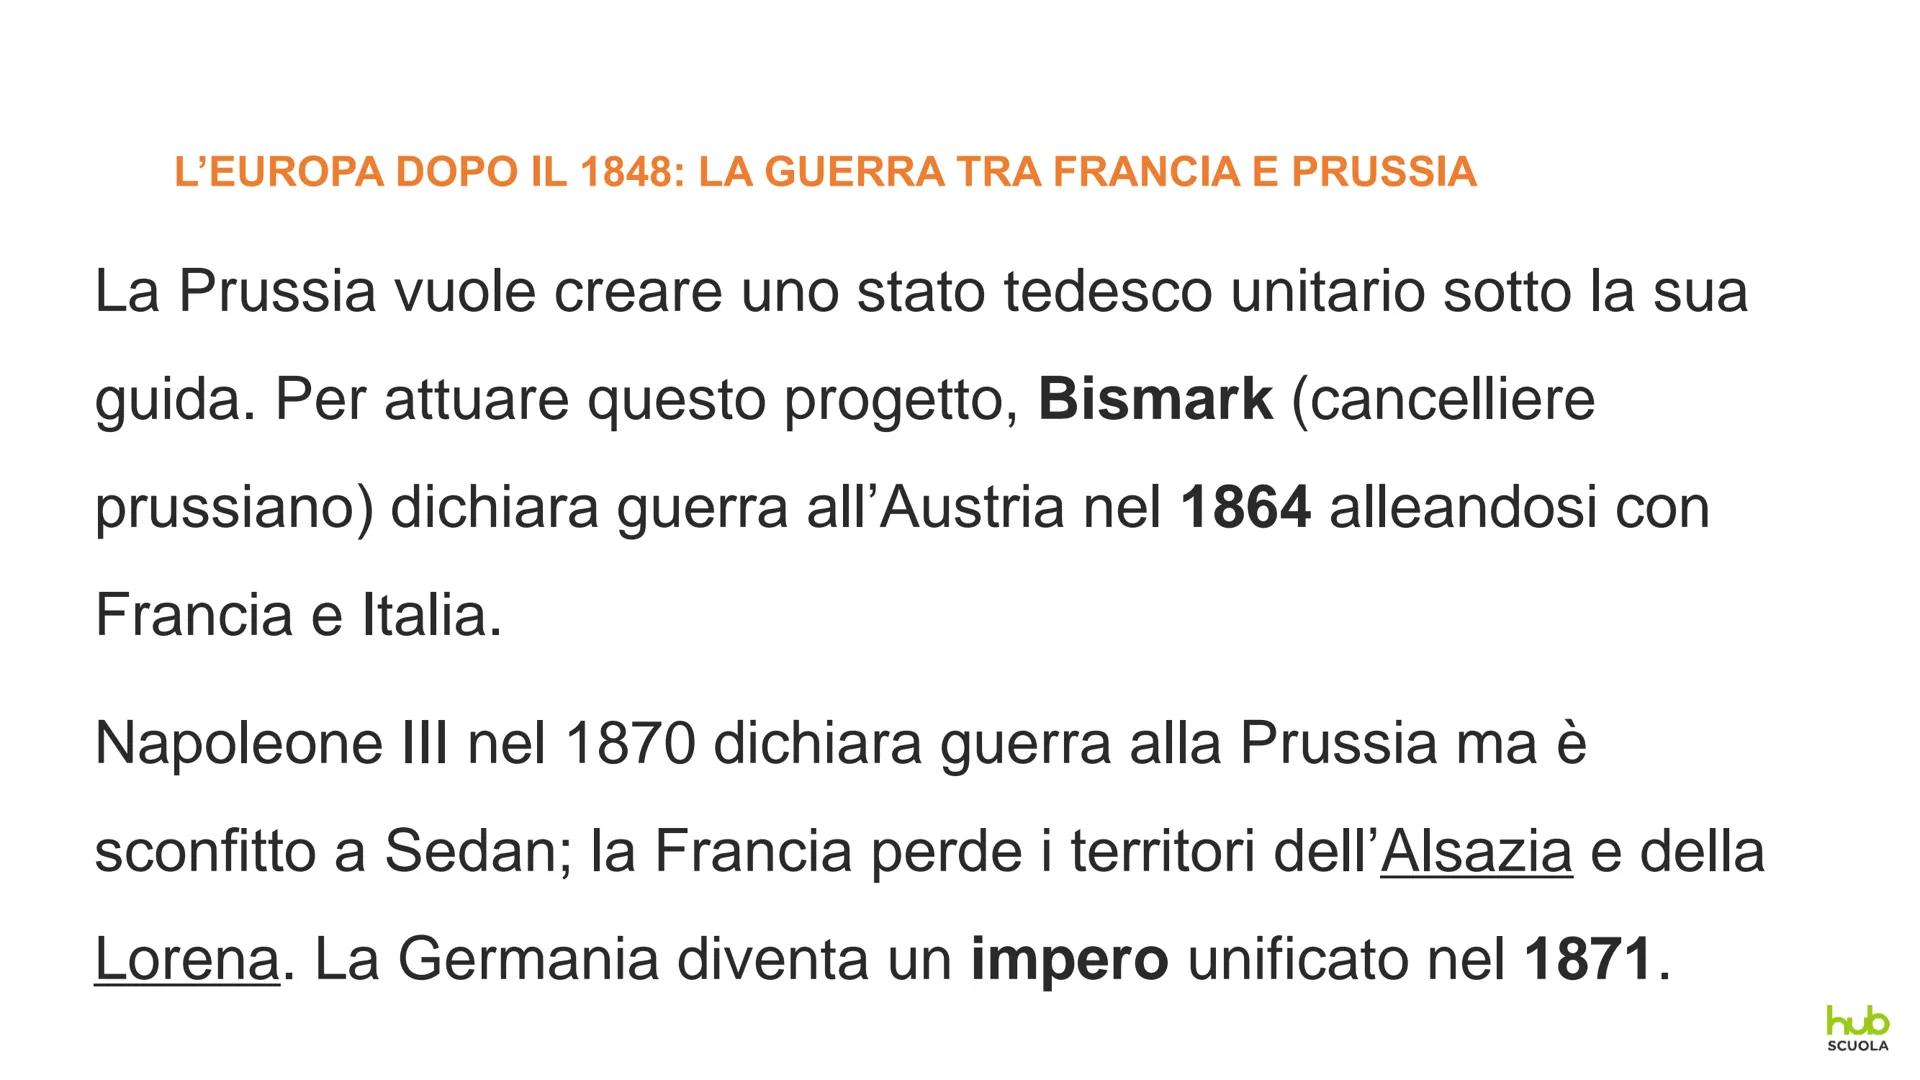 1848 in Europa
e il Risorgimento italiano IL 1848 IN EUROPA E IL RISORGIMENTO ITALIANO
UNA NUOVA ONDATA RIVOLUZIONARIA
La crisi economica e 